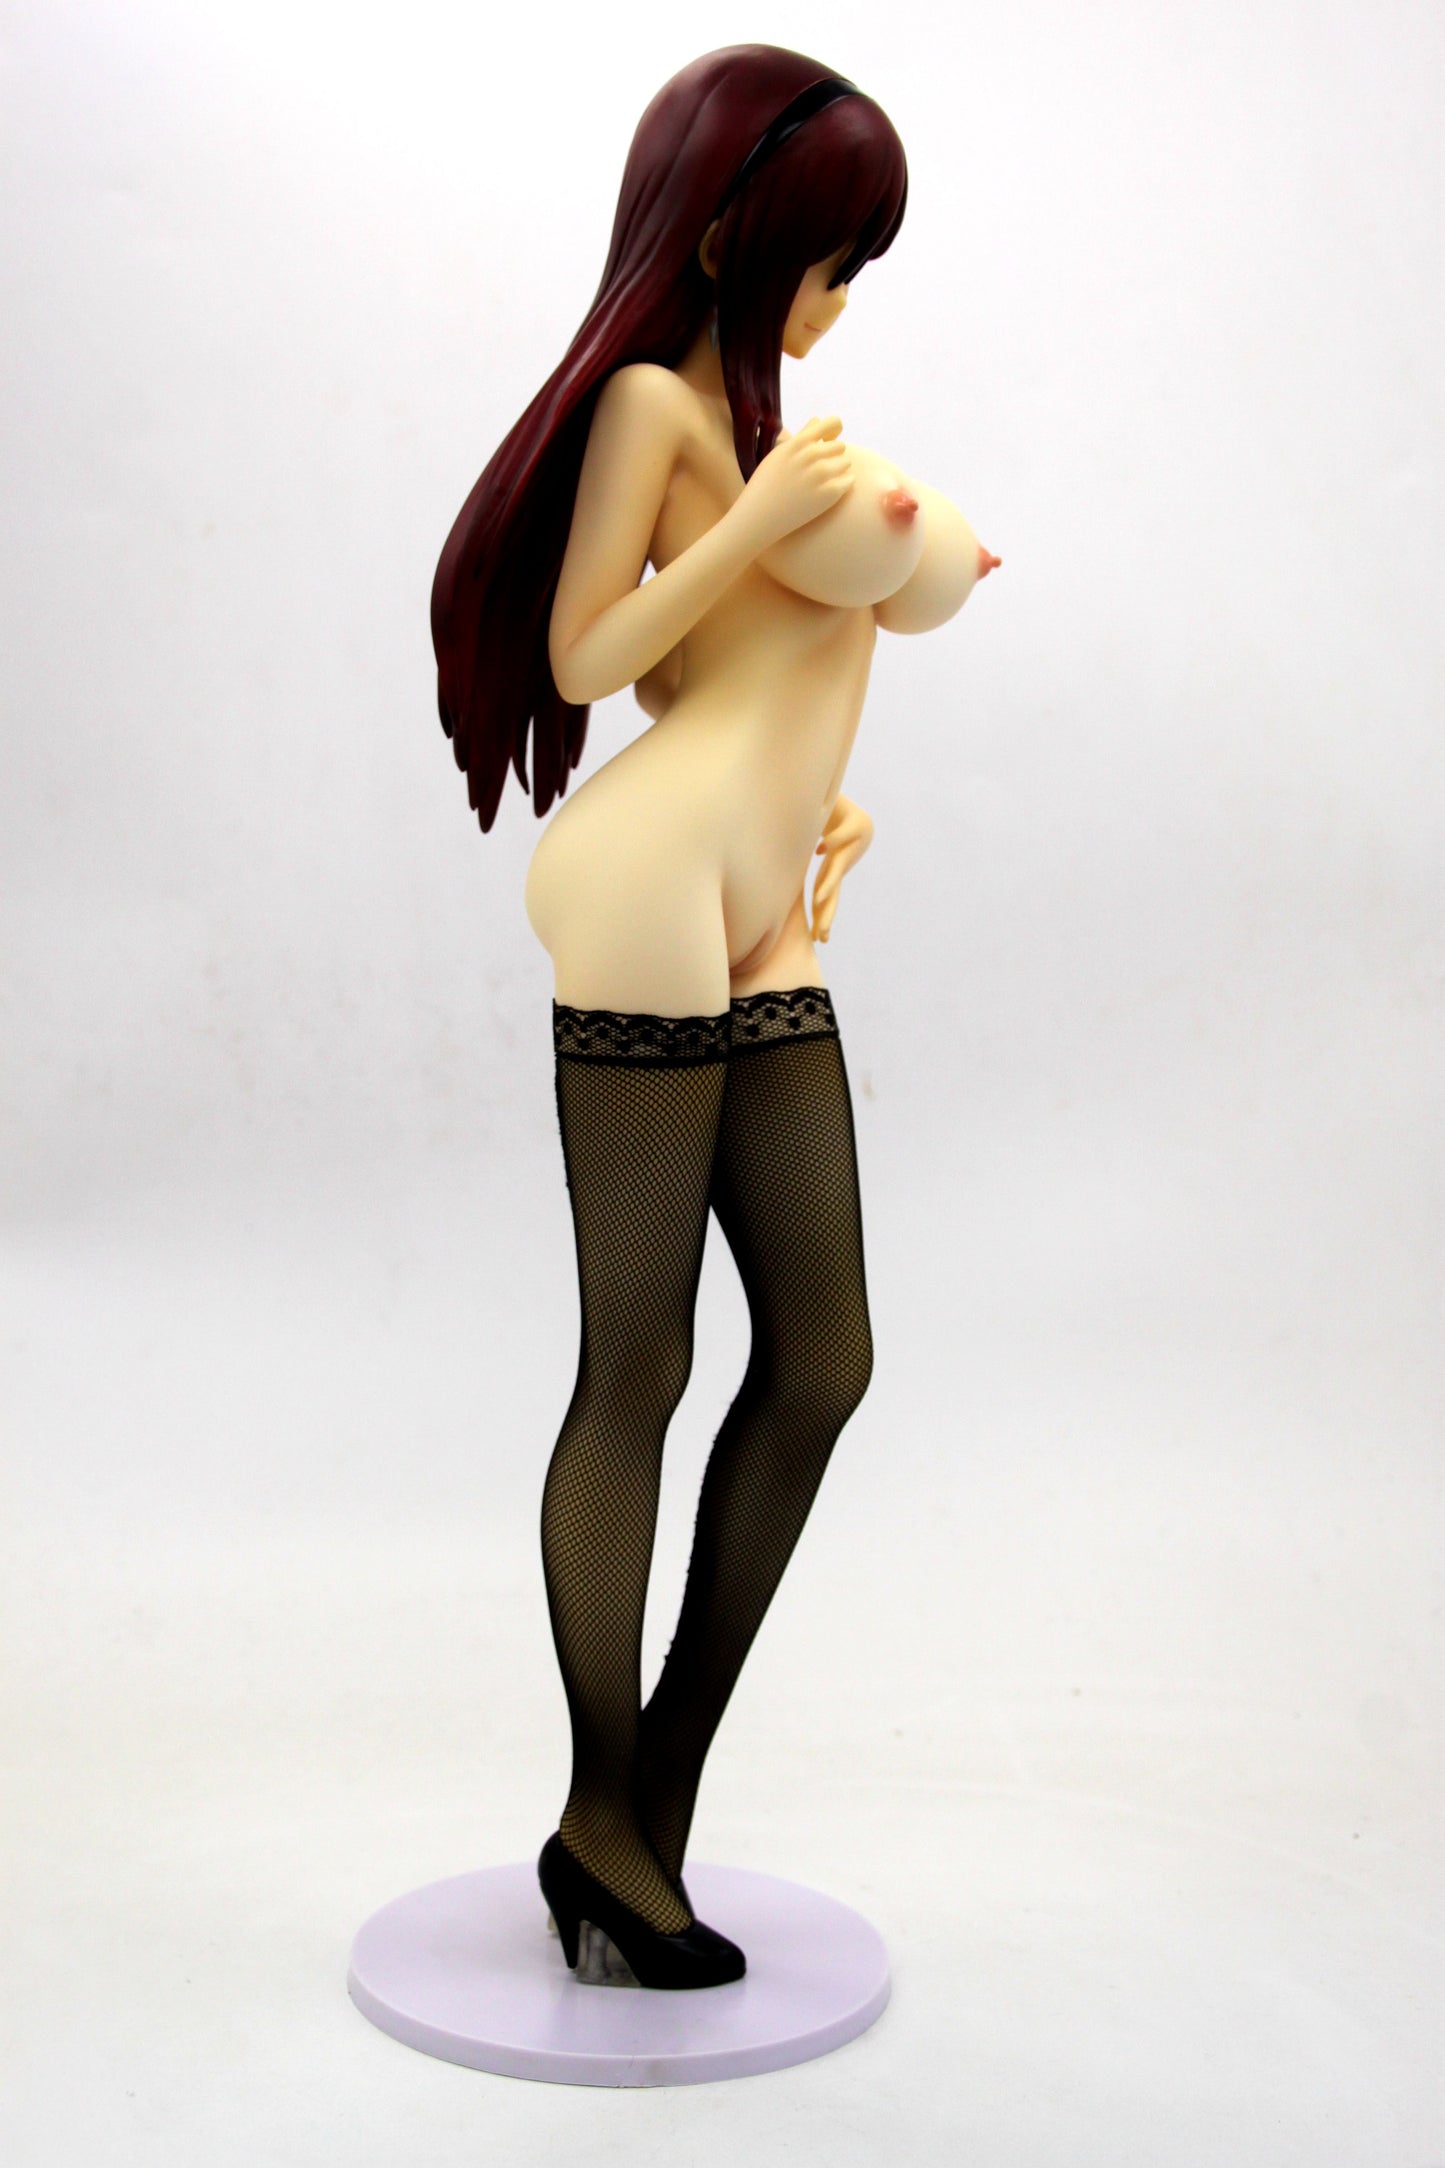 Fairy Tail - Erza Scarlet 1/4 Resin Figure nude anime figure